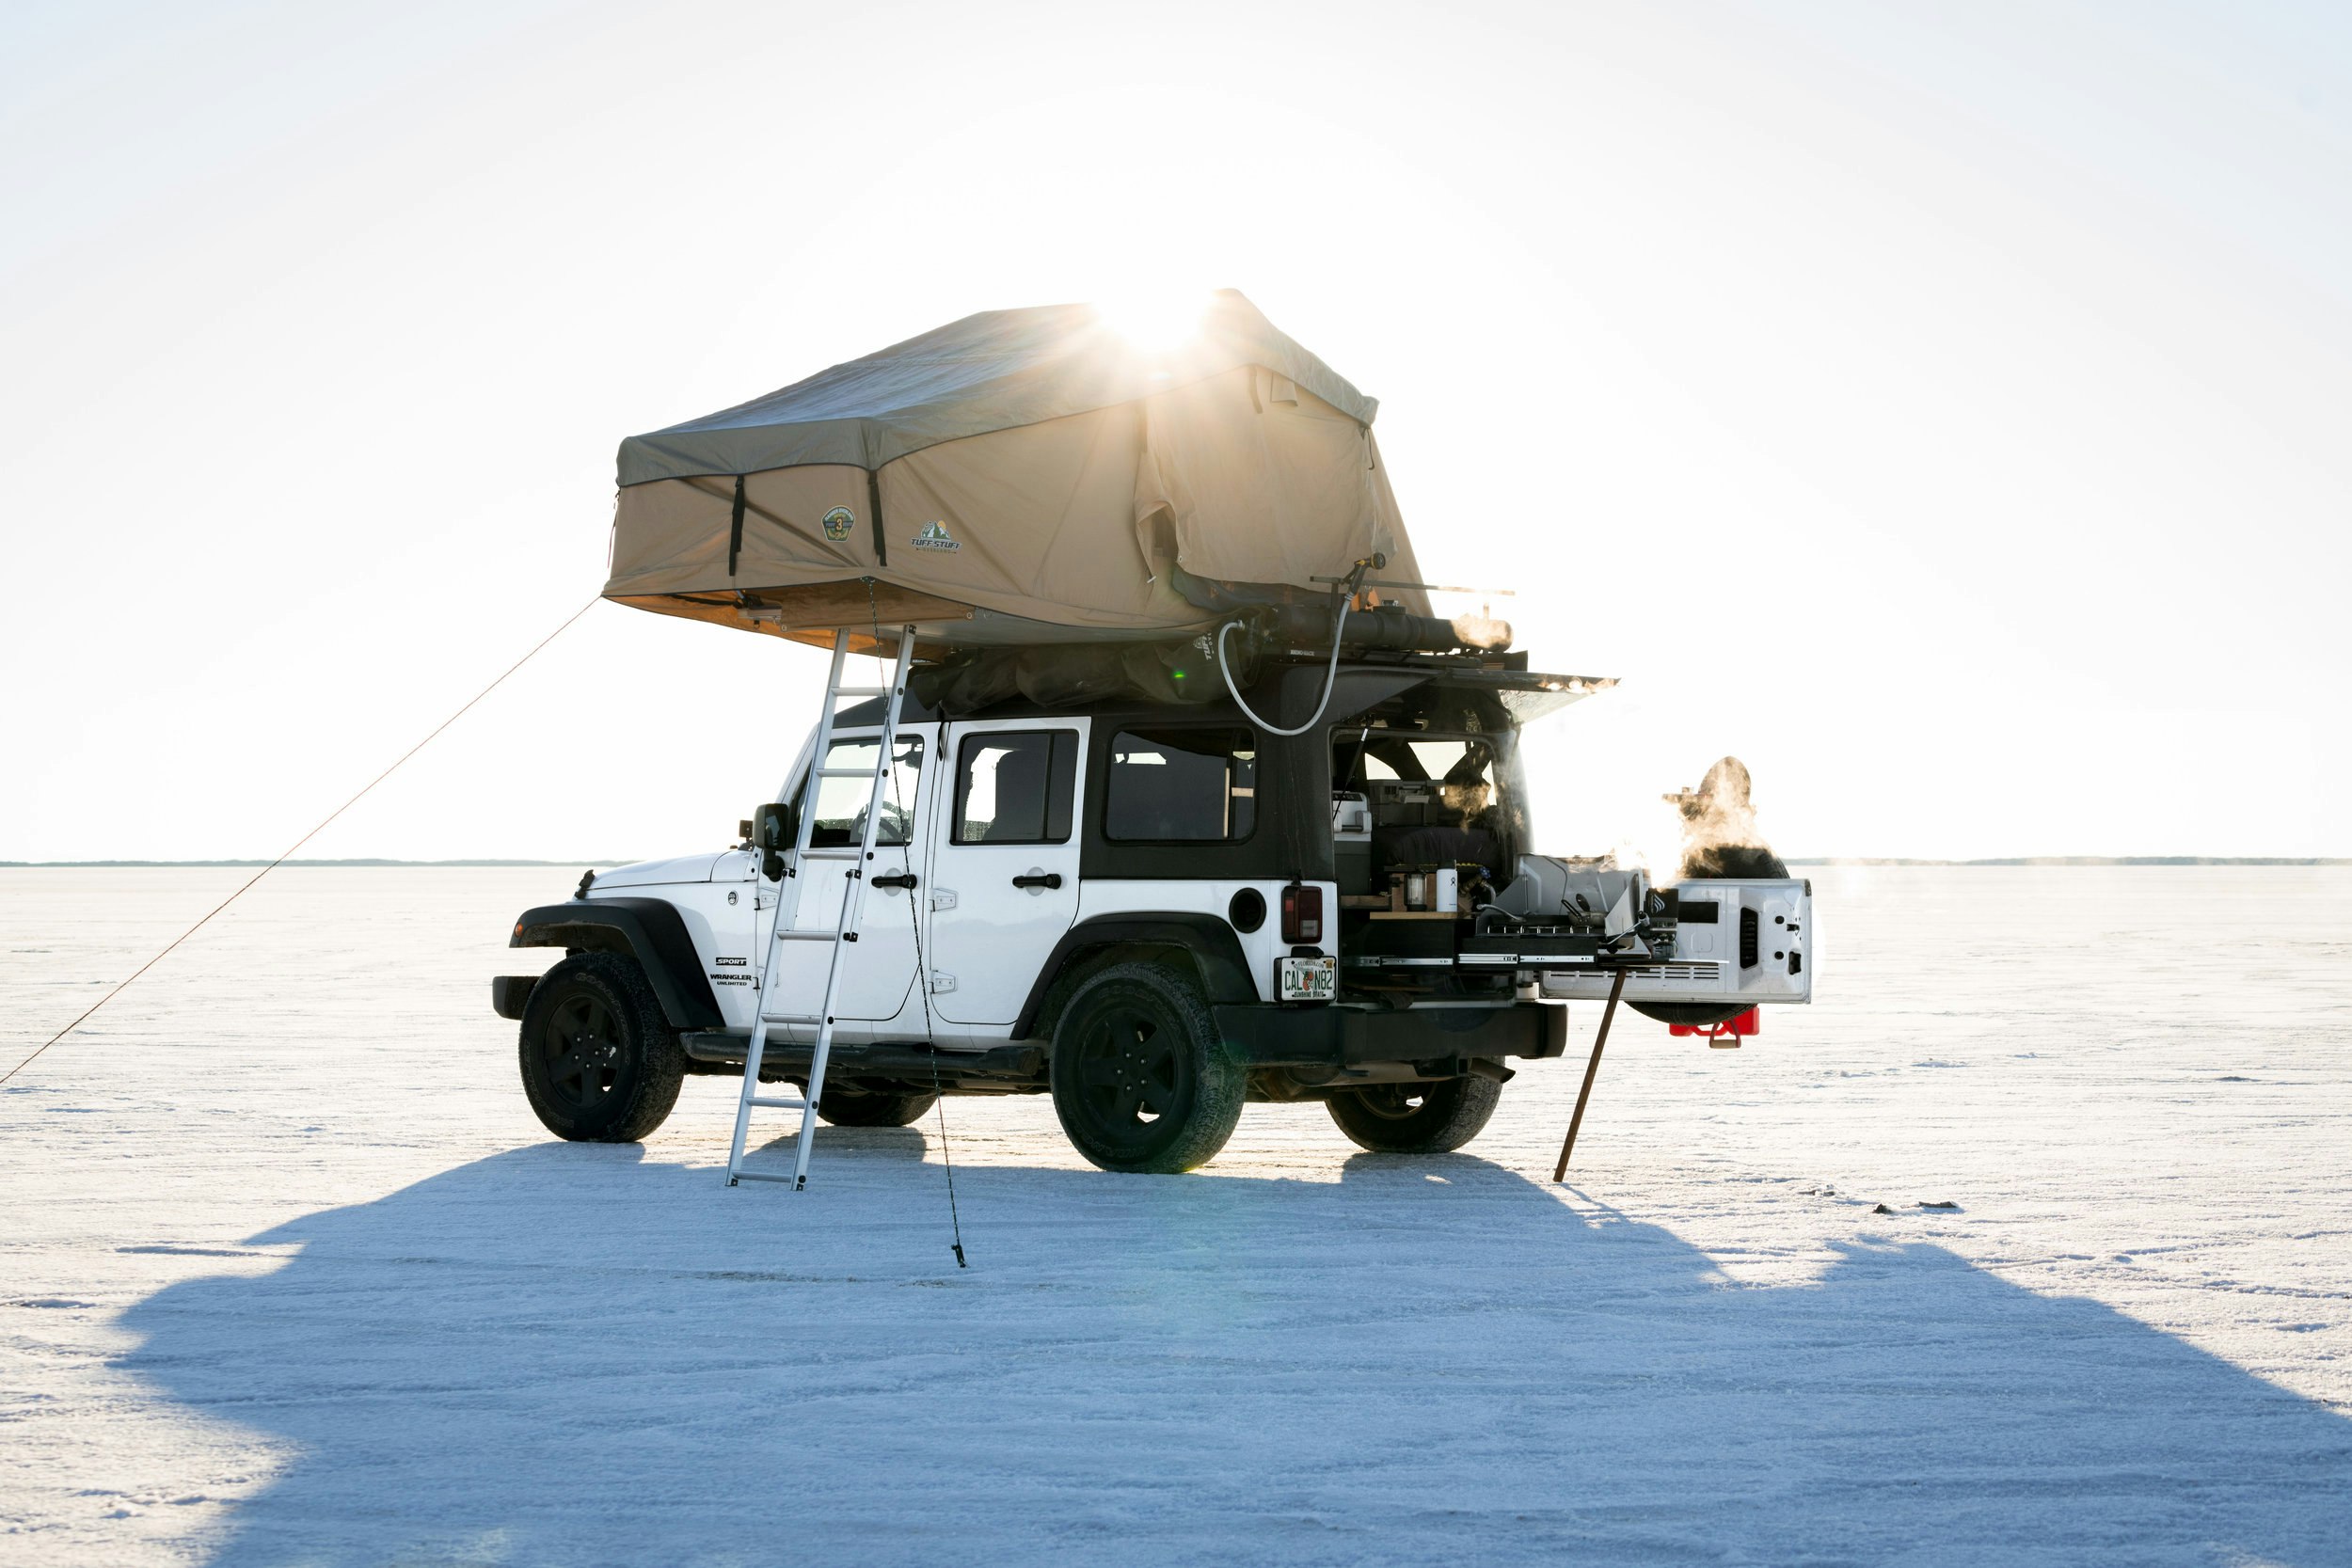 Drew's white Jeep Wrangler set up in a desert